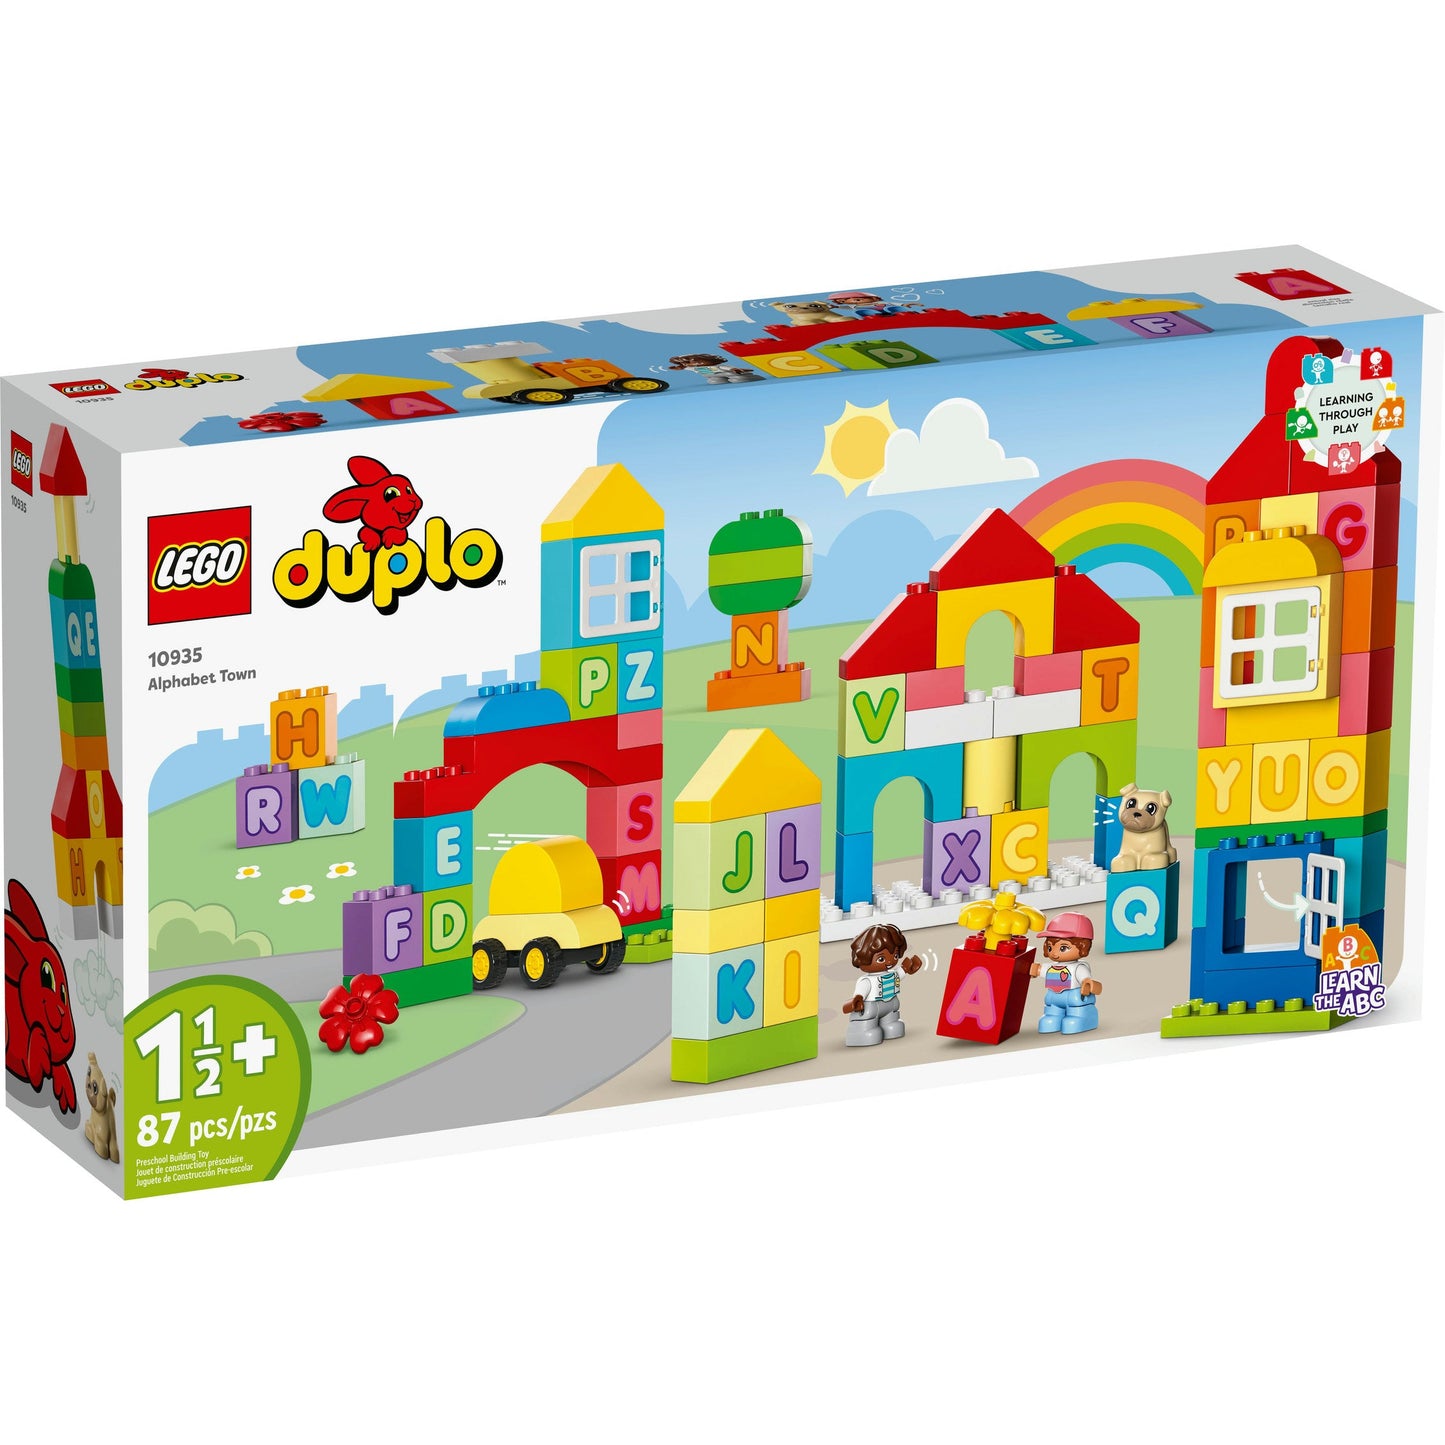 Lego Duplo Alphabet Town